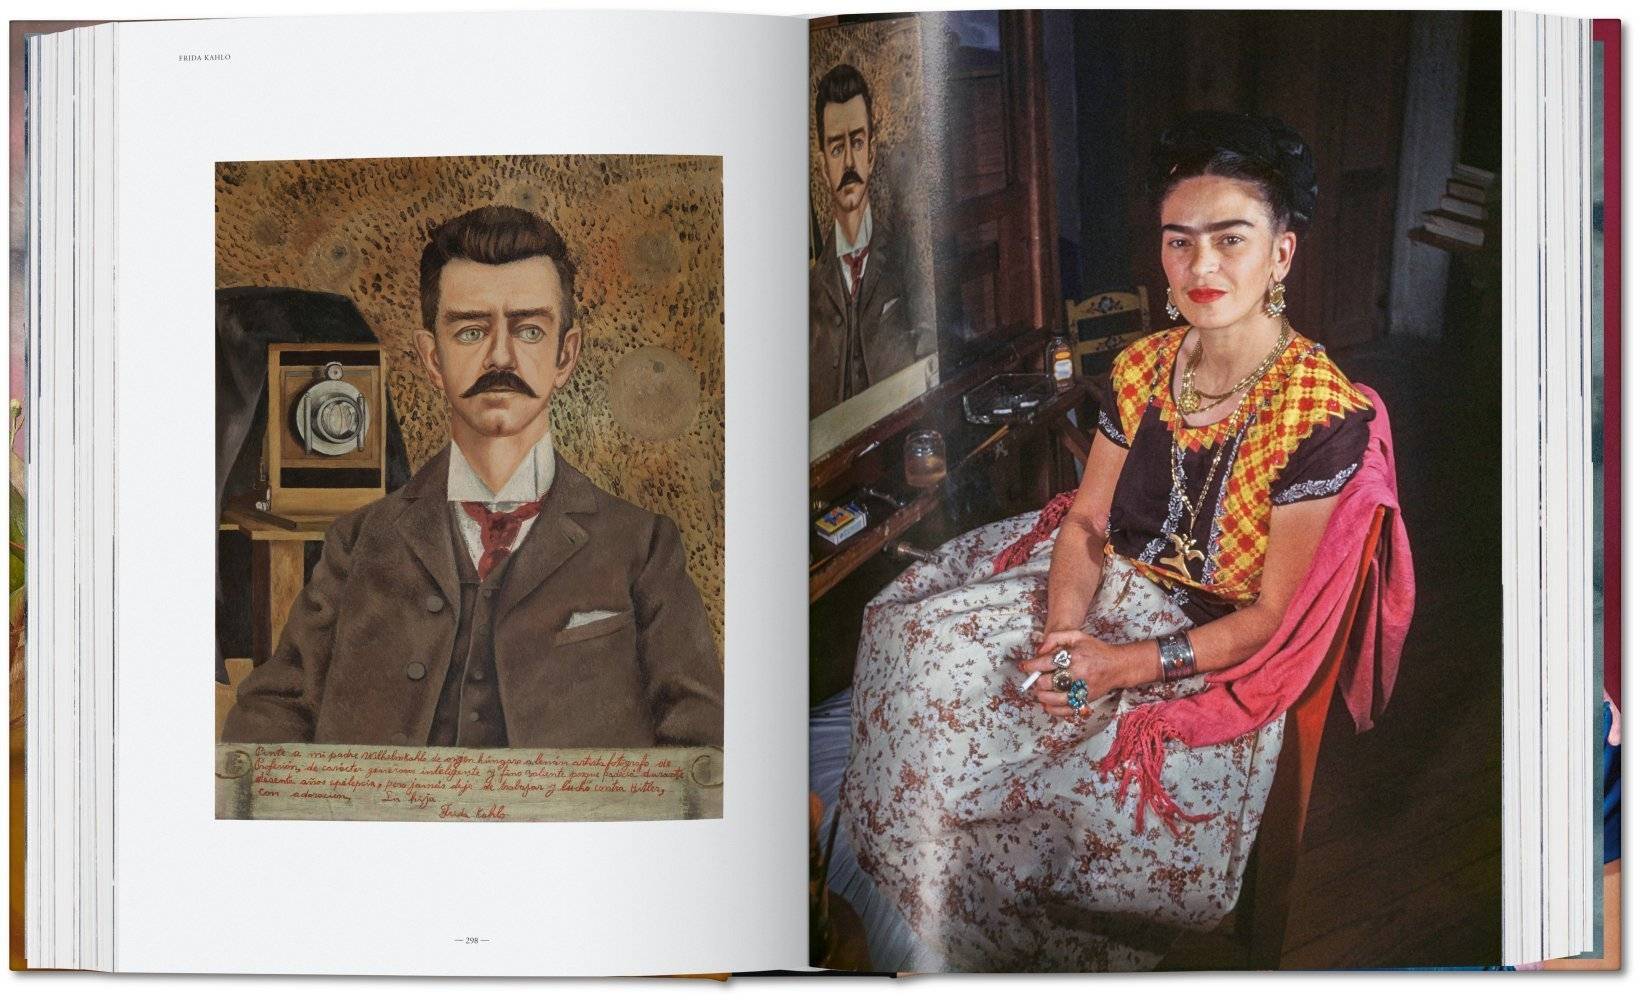 L'œuvre complète de Frida Kahlo rassemblée dans une monographie XXL publiée chez Taschen